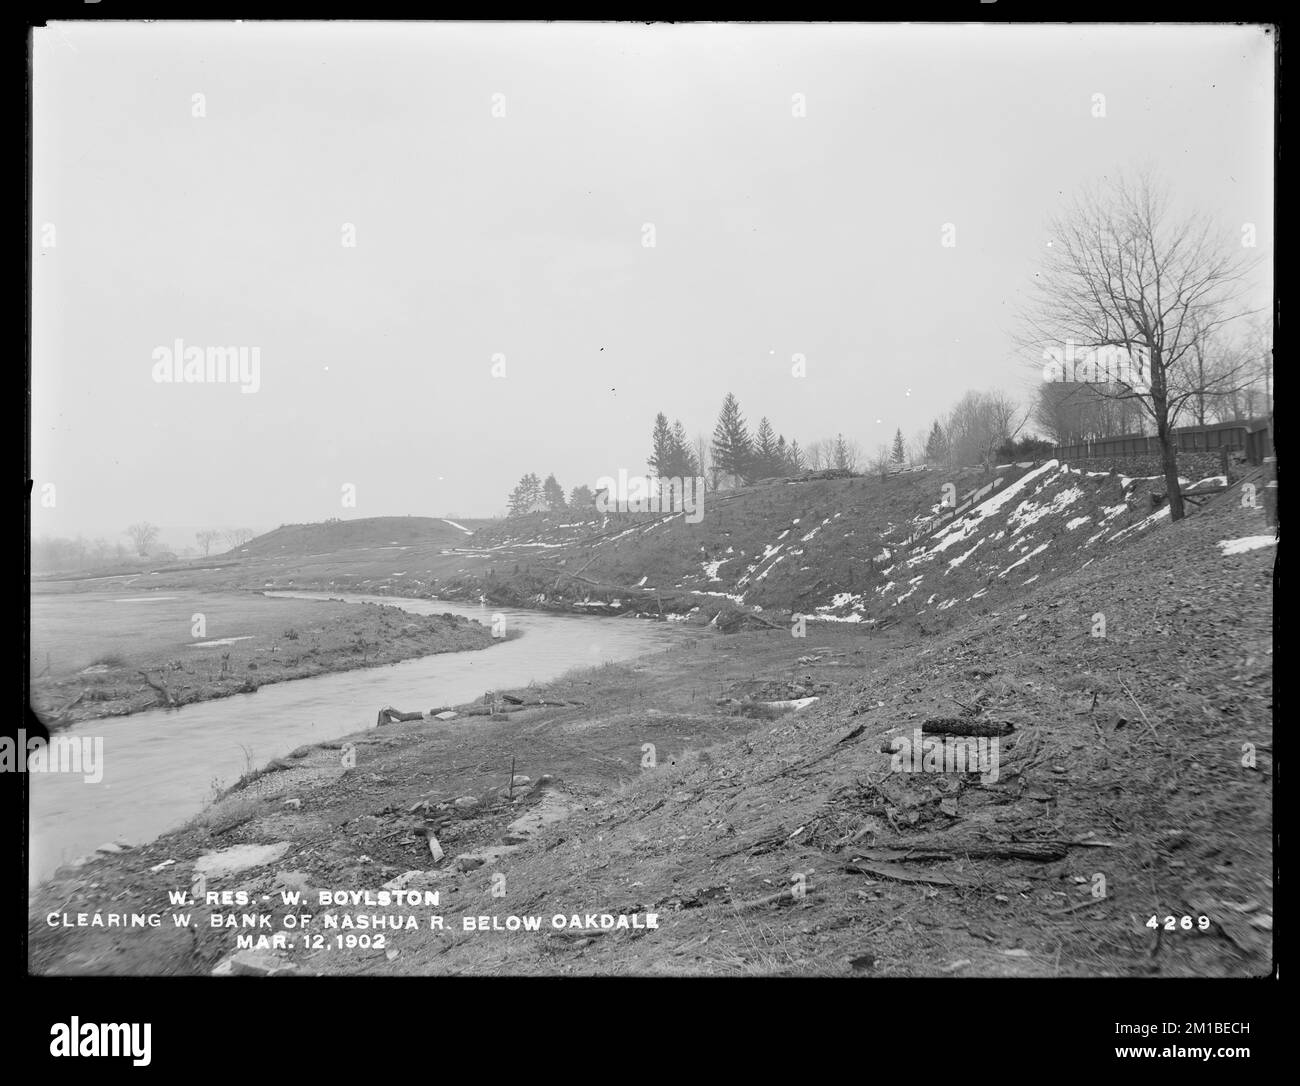 Wachusett Reservoir, Westufer des Nashua River, unter Oakdale, West Boylston, Mass., März 12, 1902 , Wasserwerke, Reservoirs, Wasserverteilungsstrukturen, Baustellen Stockfoto